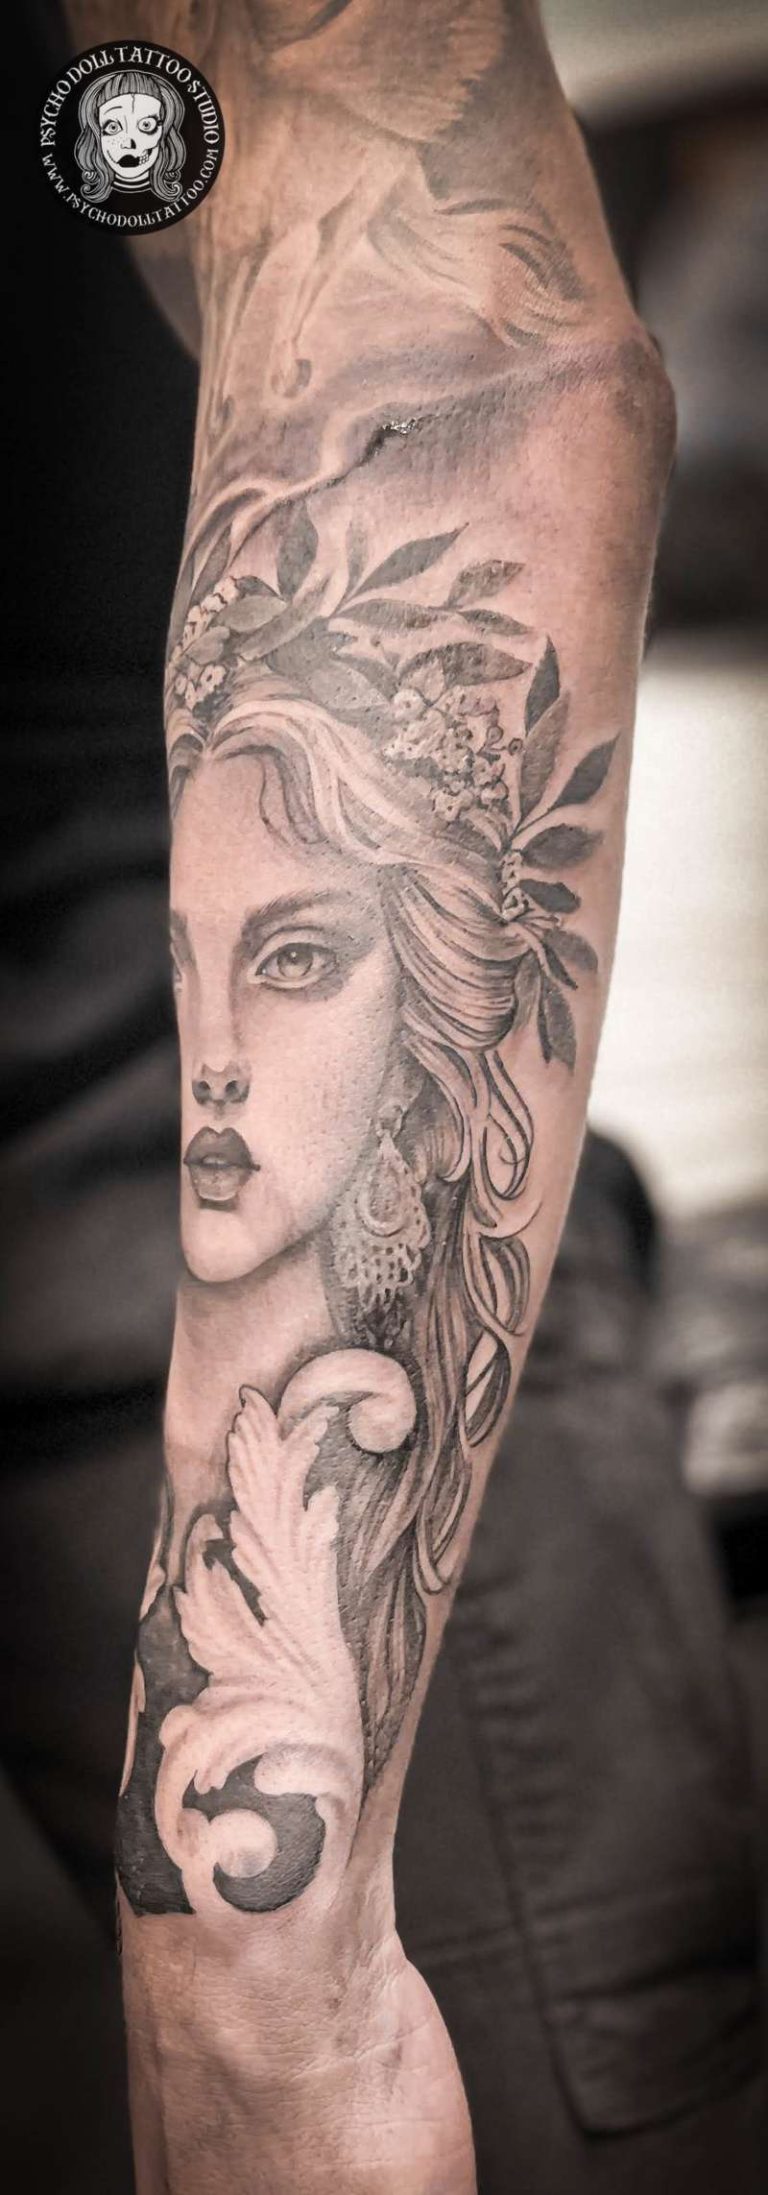 Greek goddess tattoo